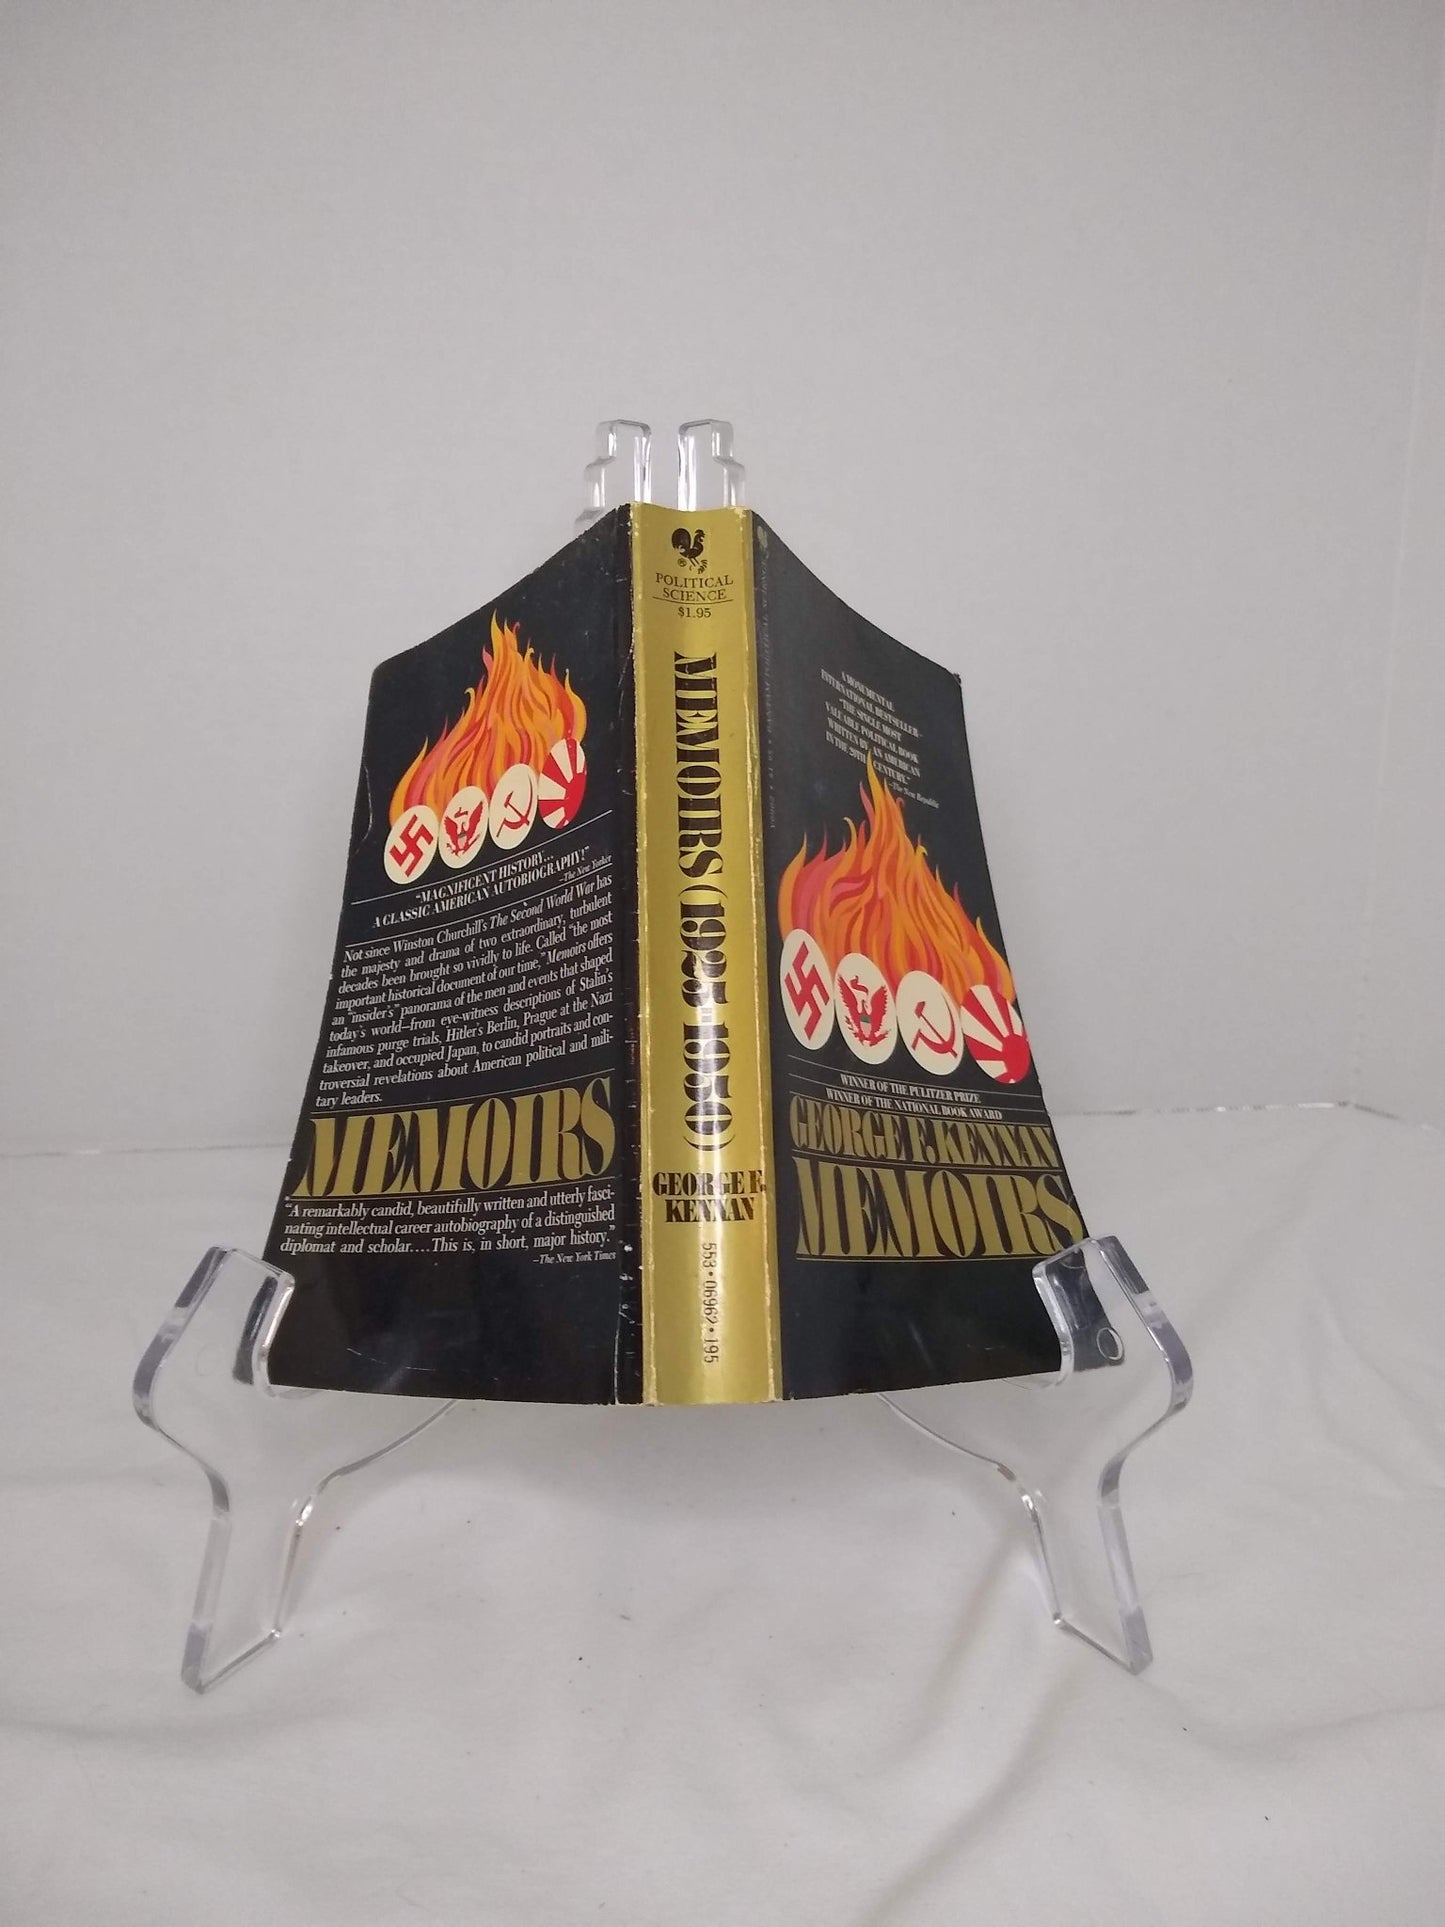 Memoirs (of George F. Kennan) - [ash-ling] Booksellers